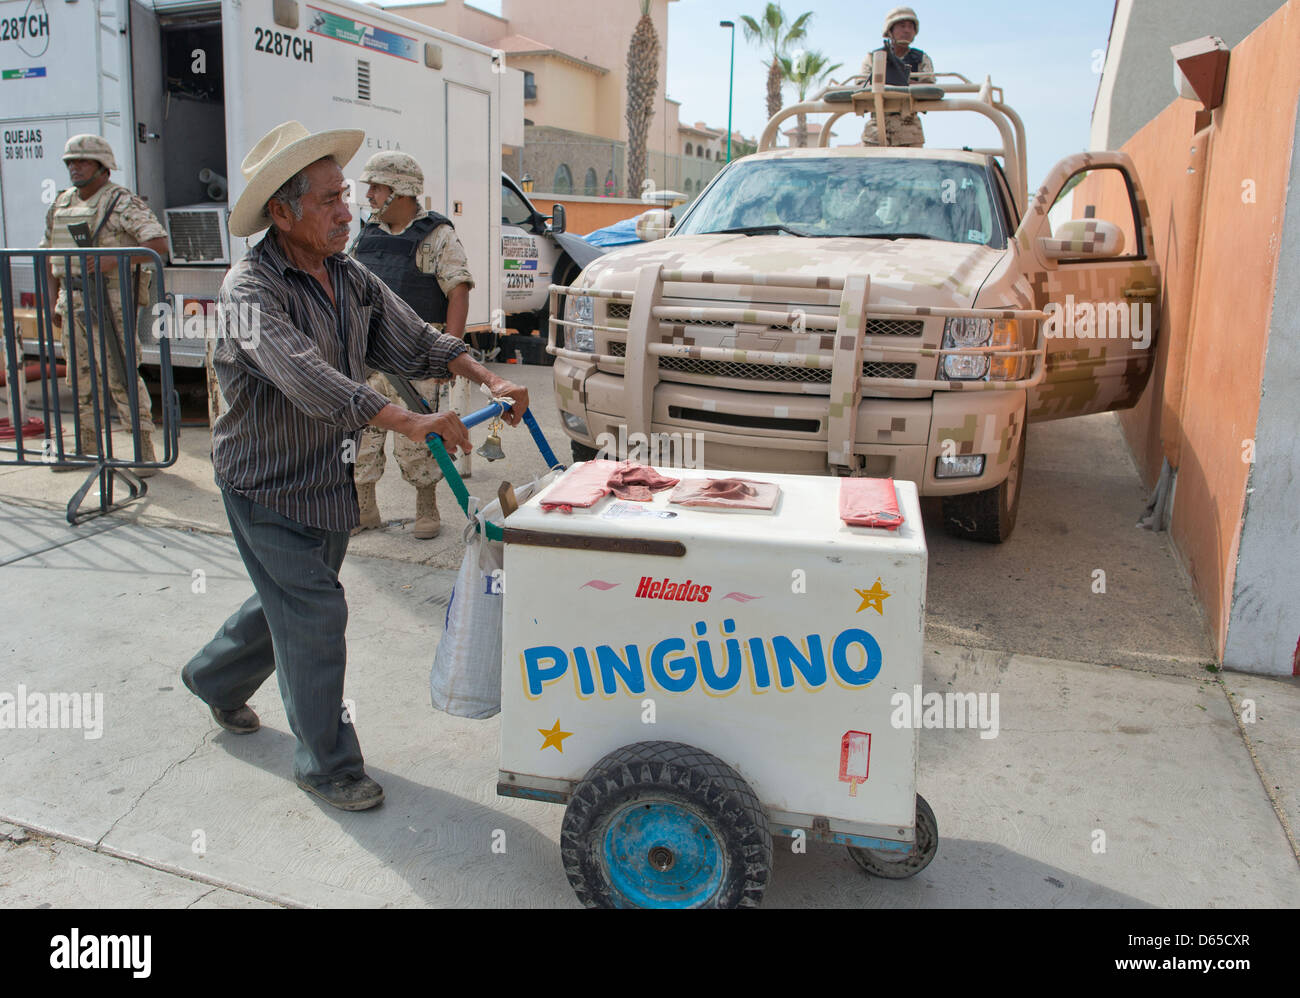 Ein Eisverkäufer schiebt am Sonntag (17.06.2012) in Los Cabos, Mexiko, seinen Eiswagen an bewaffneten Soldaten vorbei. Am 18. und 19.06.2012 findet in dem exklusiven Badeort am Pazifik der diesjährige G20-Gipfel statt. Foto: Peer Grimm dpa Stock Photo